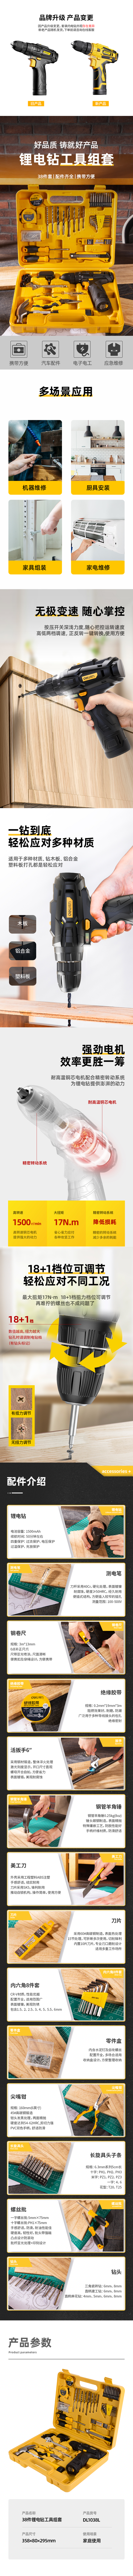 得力工具 DL1038L 锂电钻工具套装(黄)-38件